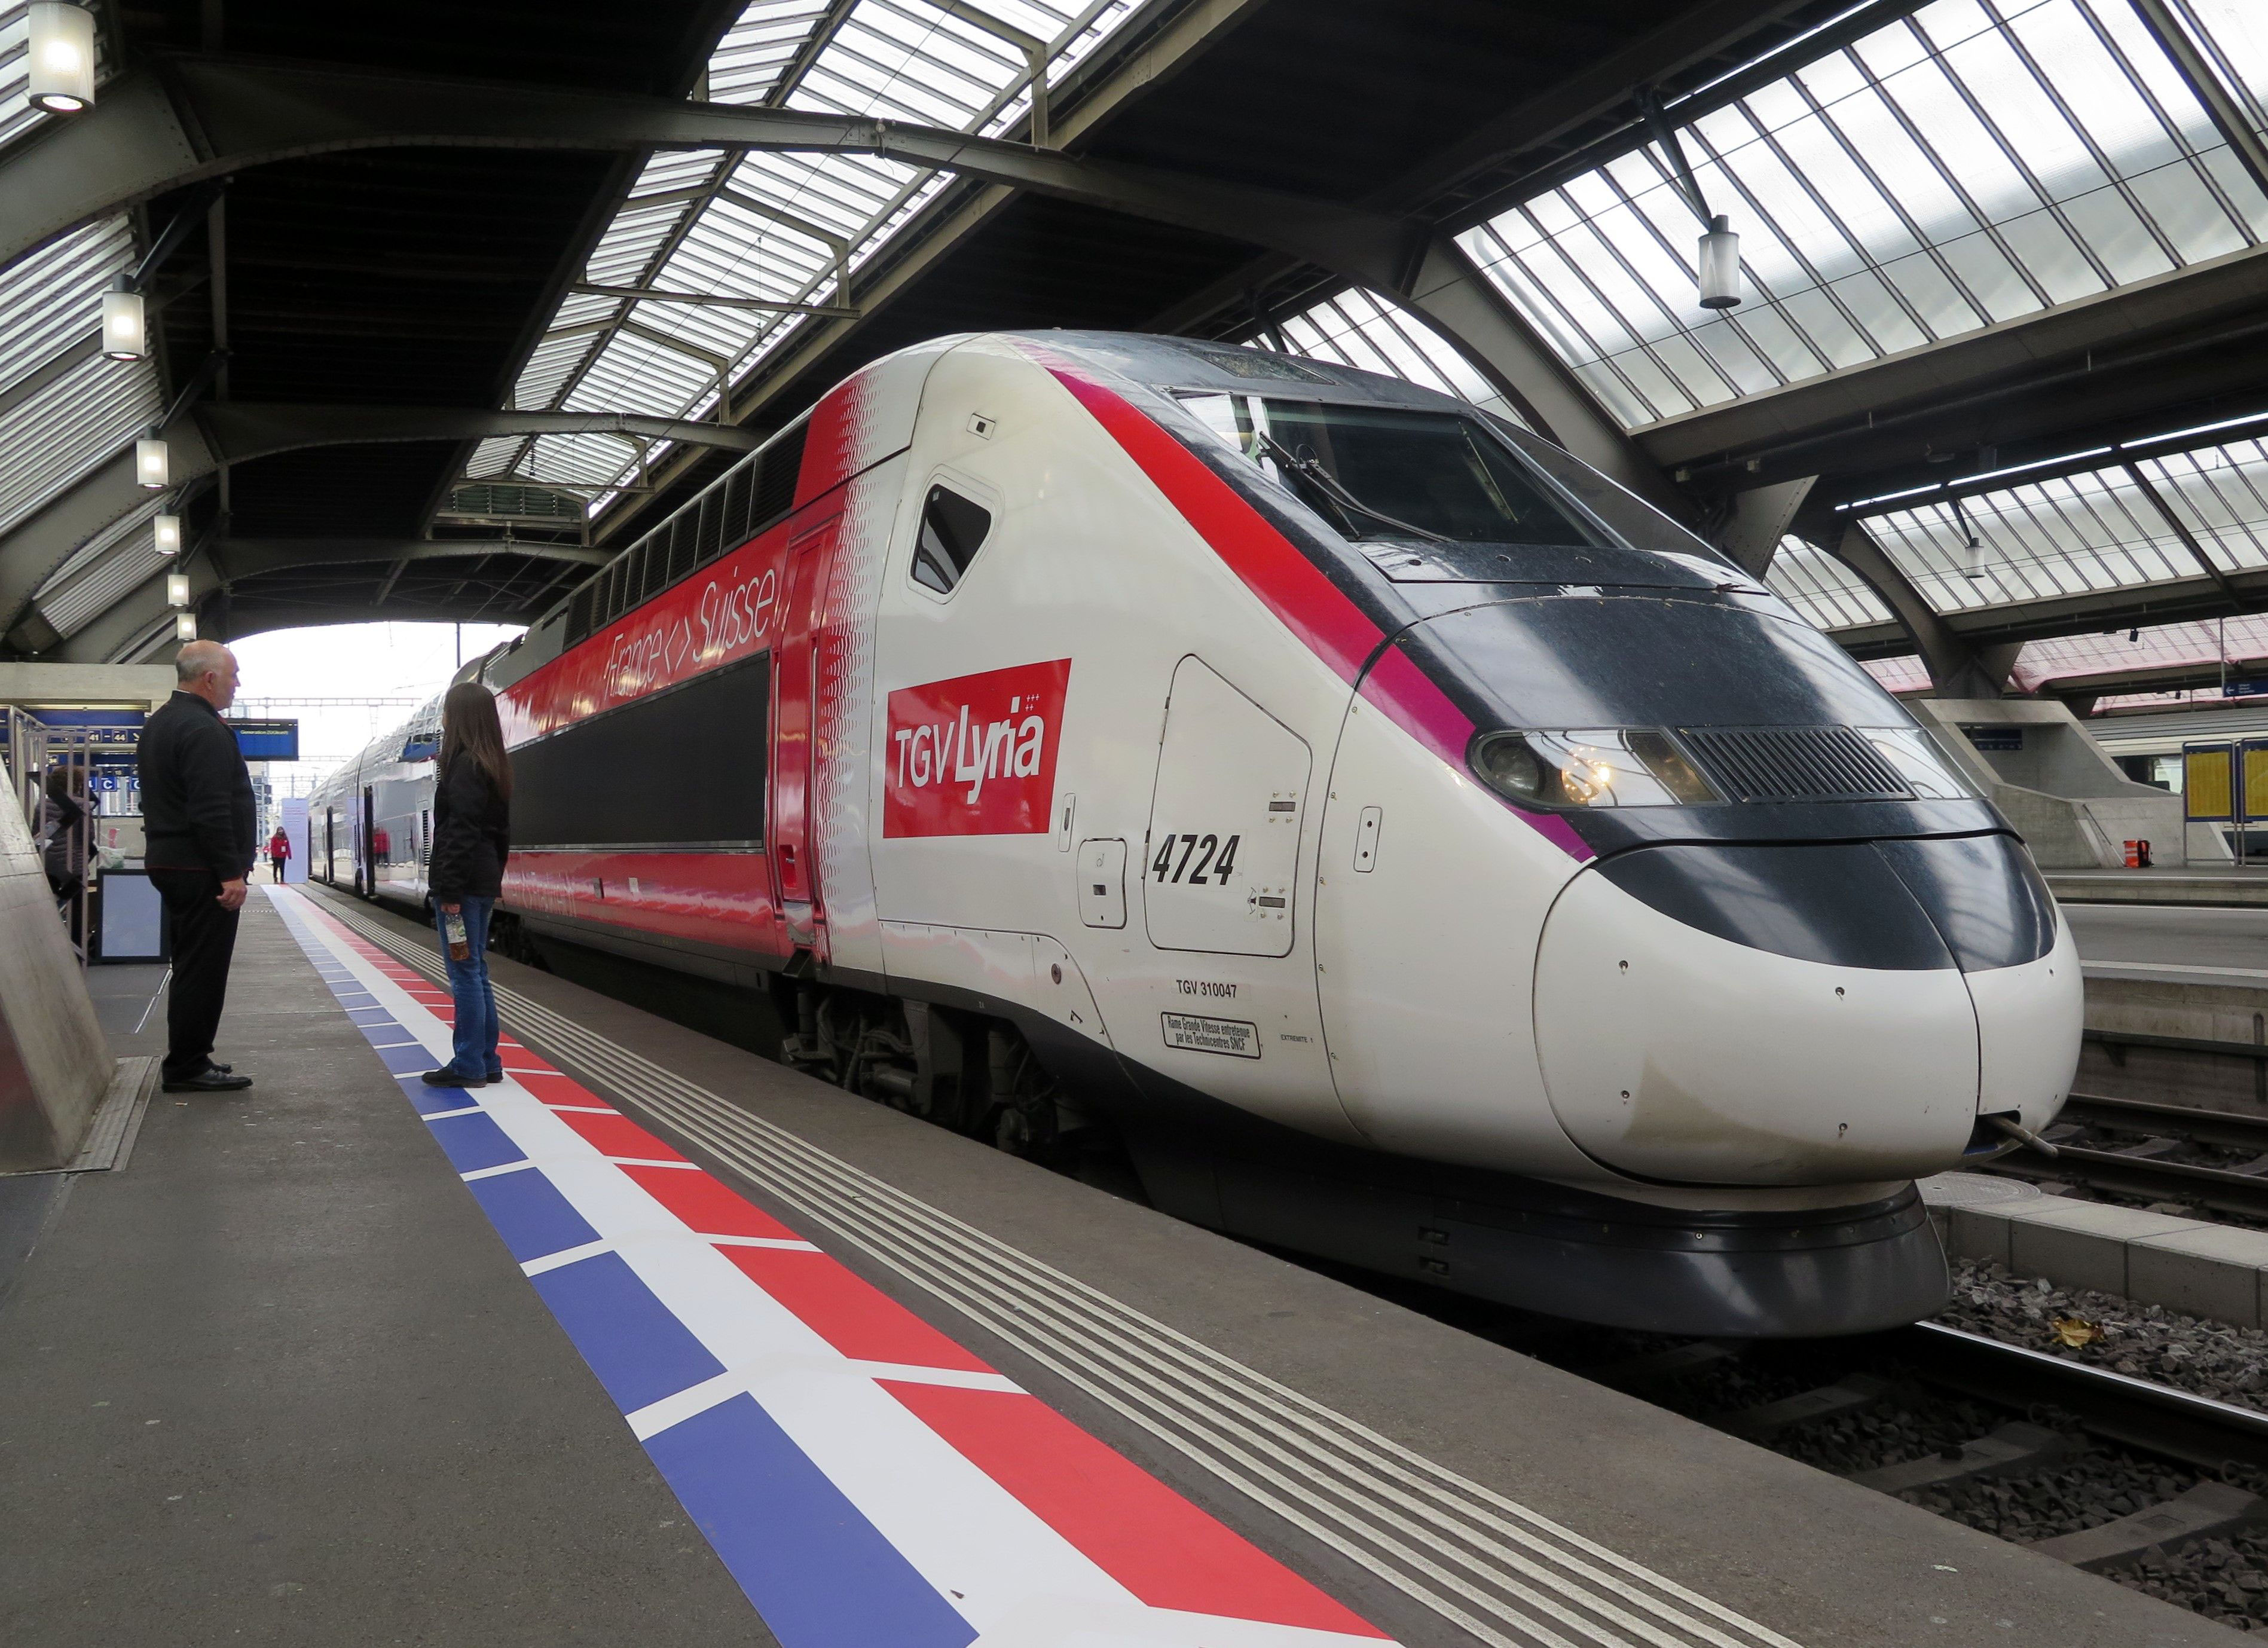 Neues Angebot von TGV Lyria 2020 nach Paris von Reisenden